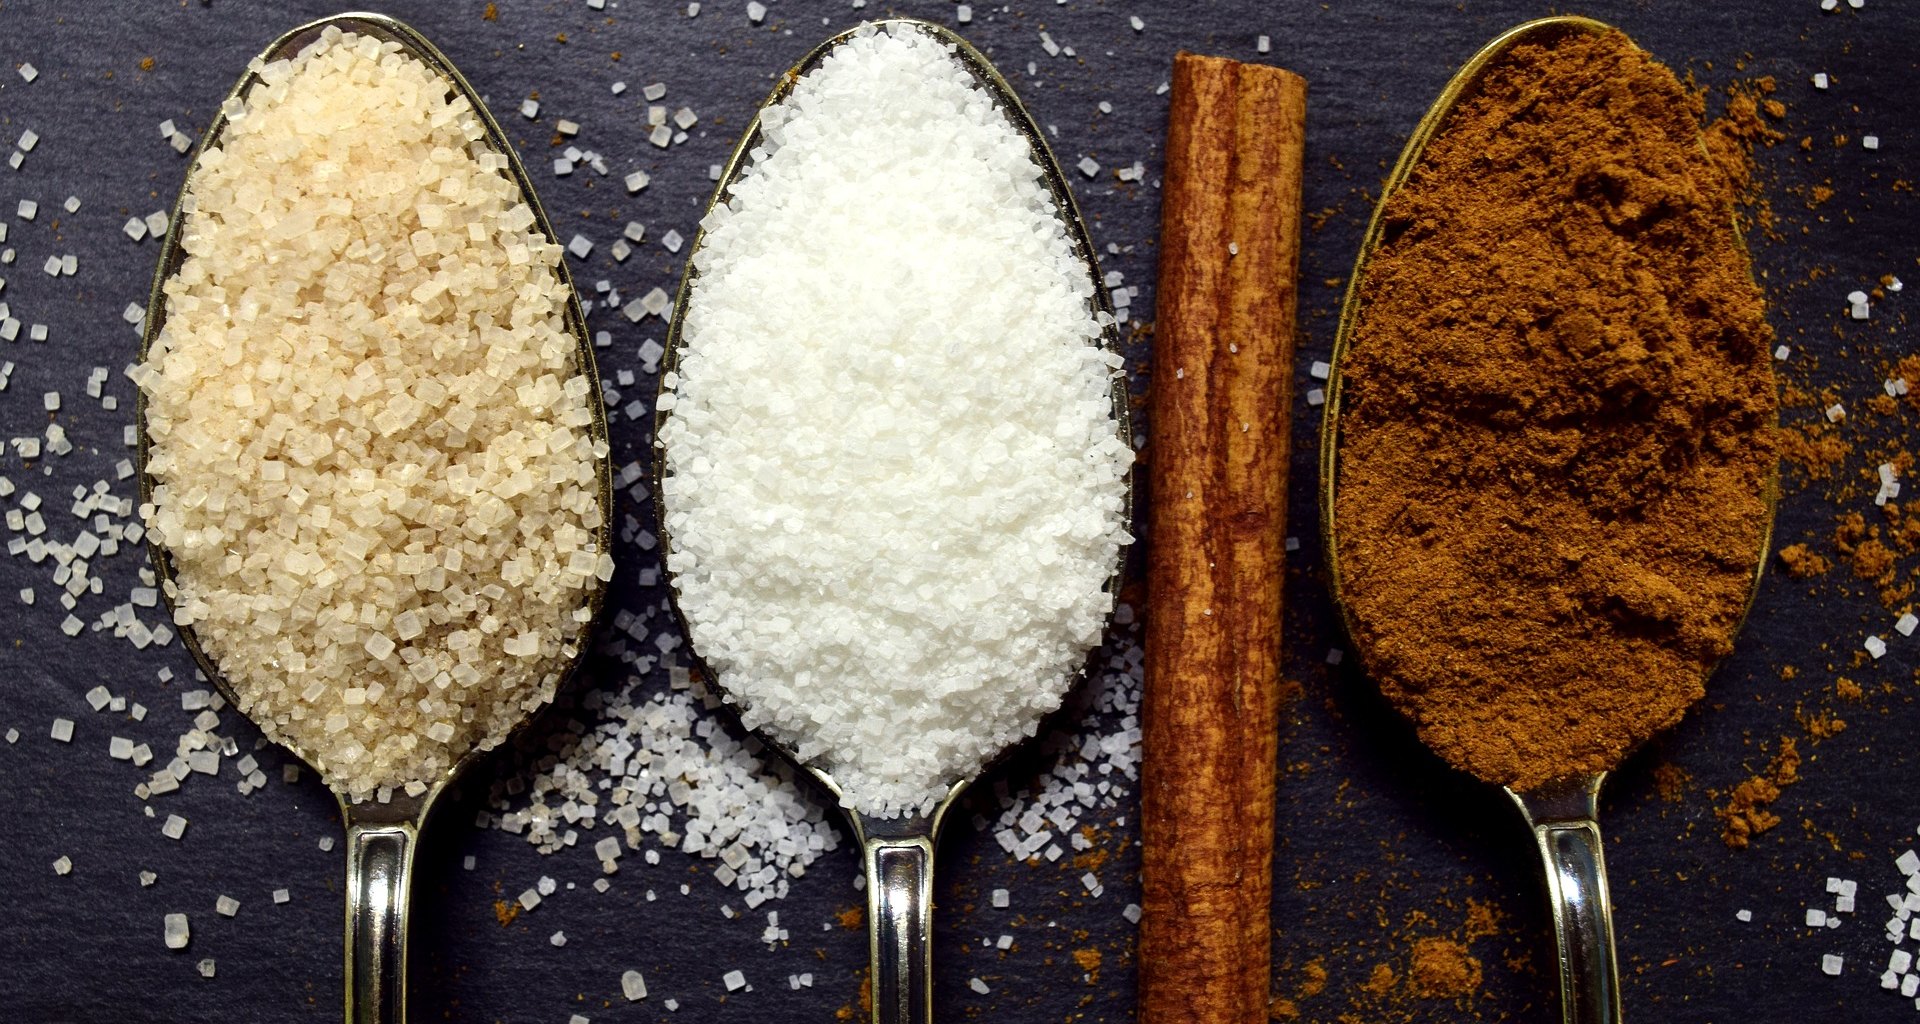 Что будет с нашим телом, если есть много сладкого: мифы и правда о сахаре